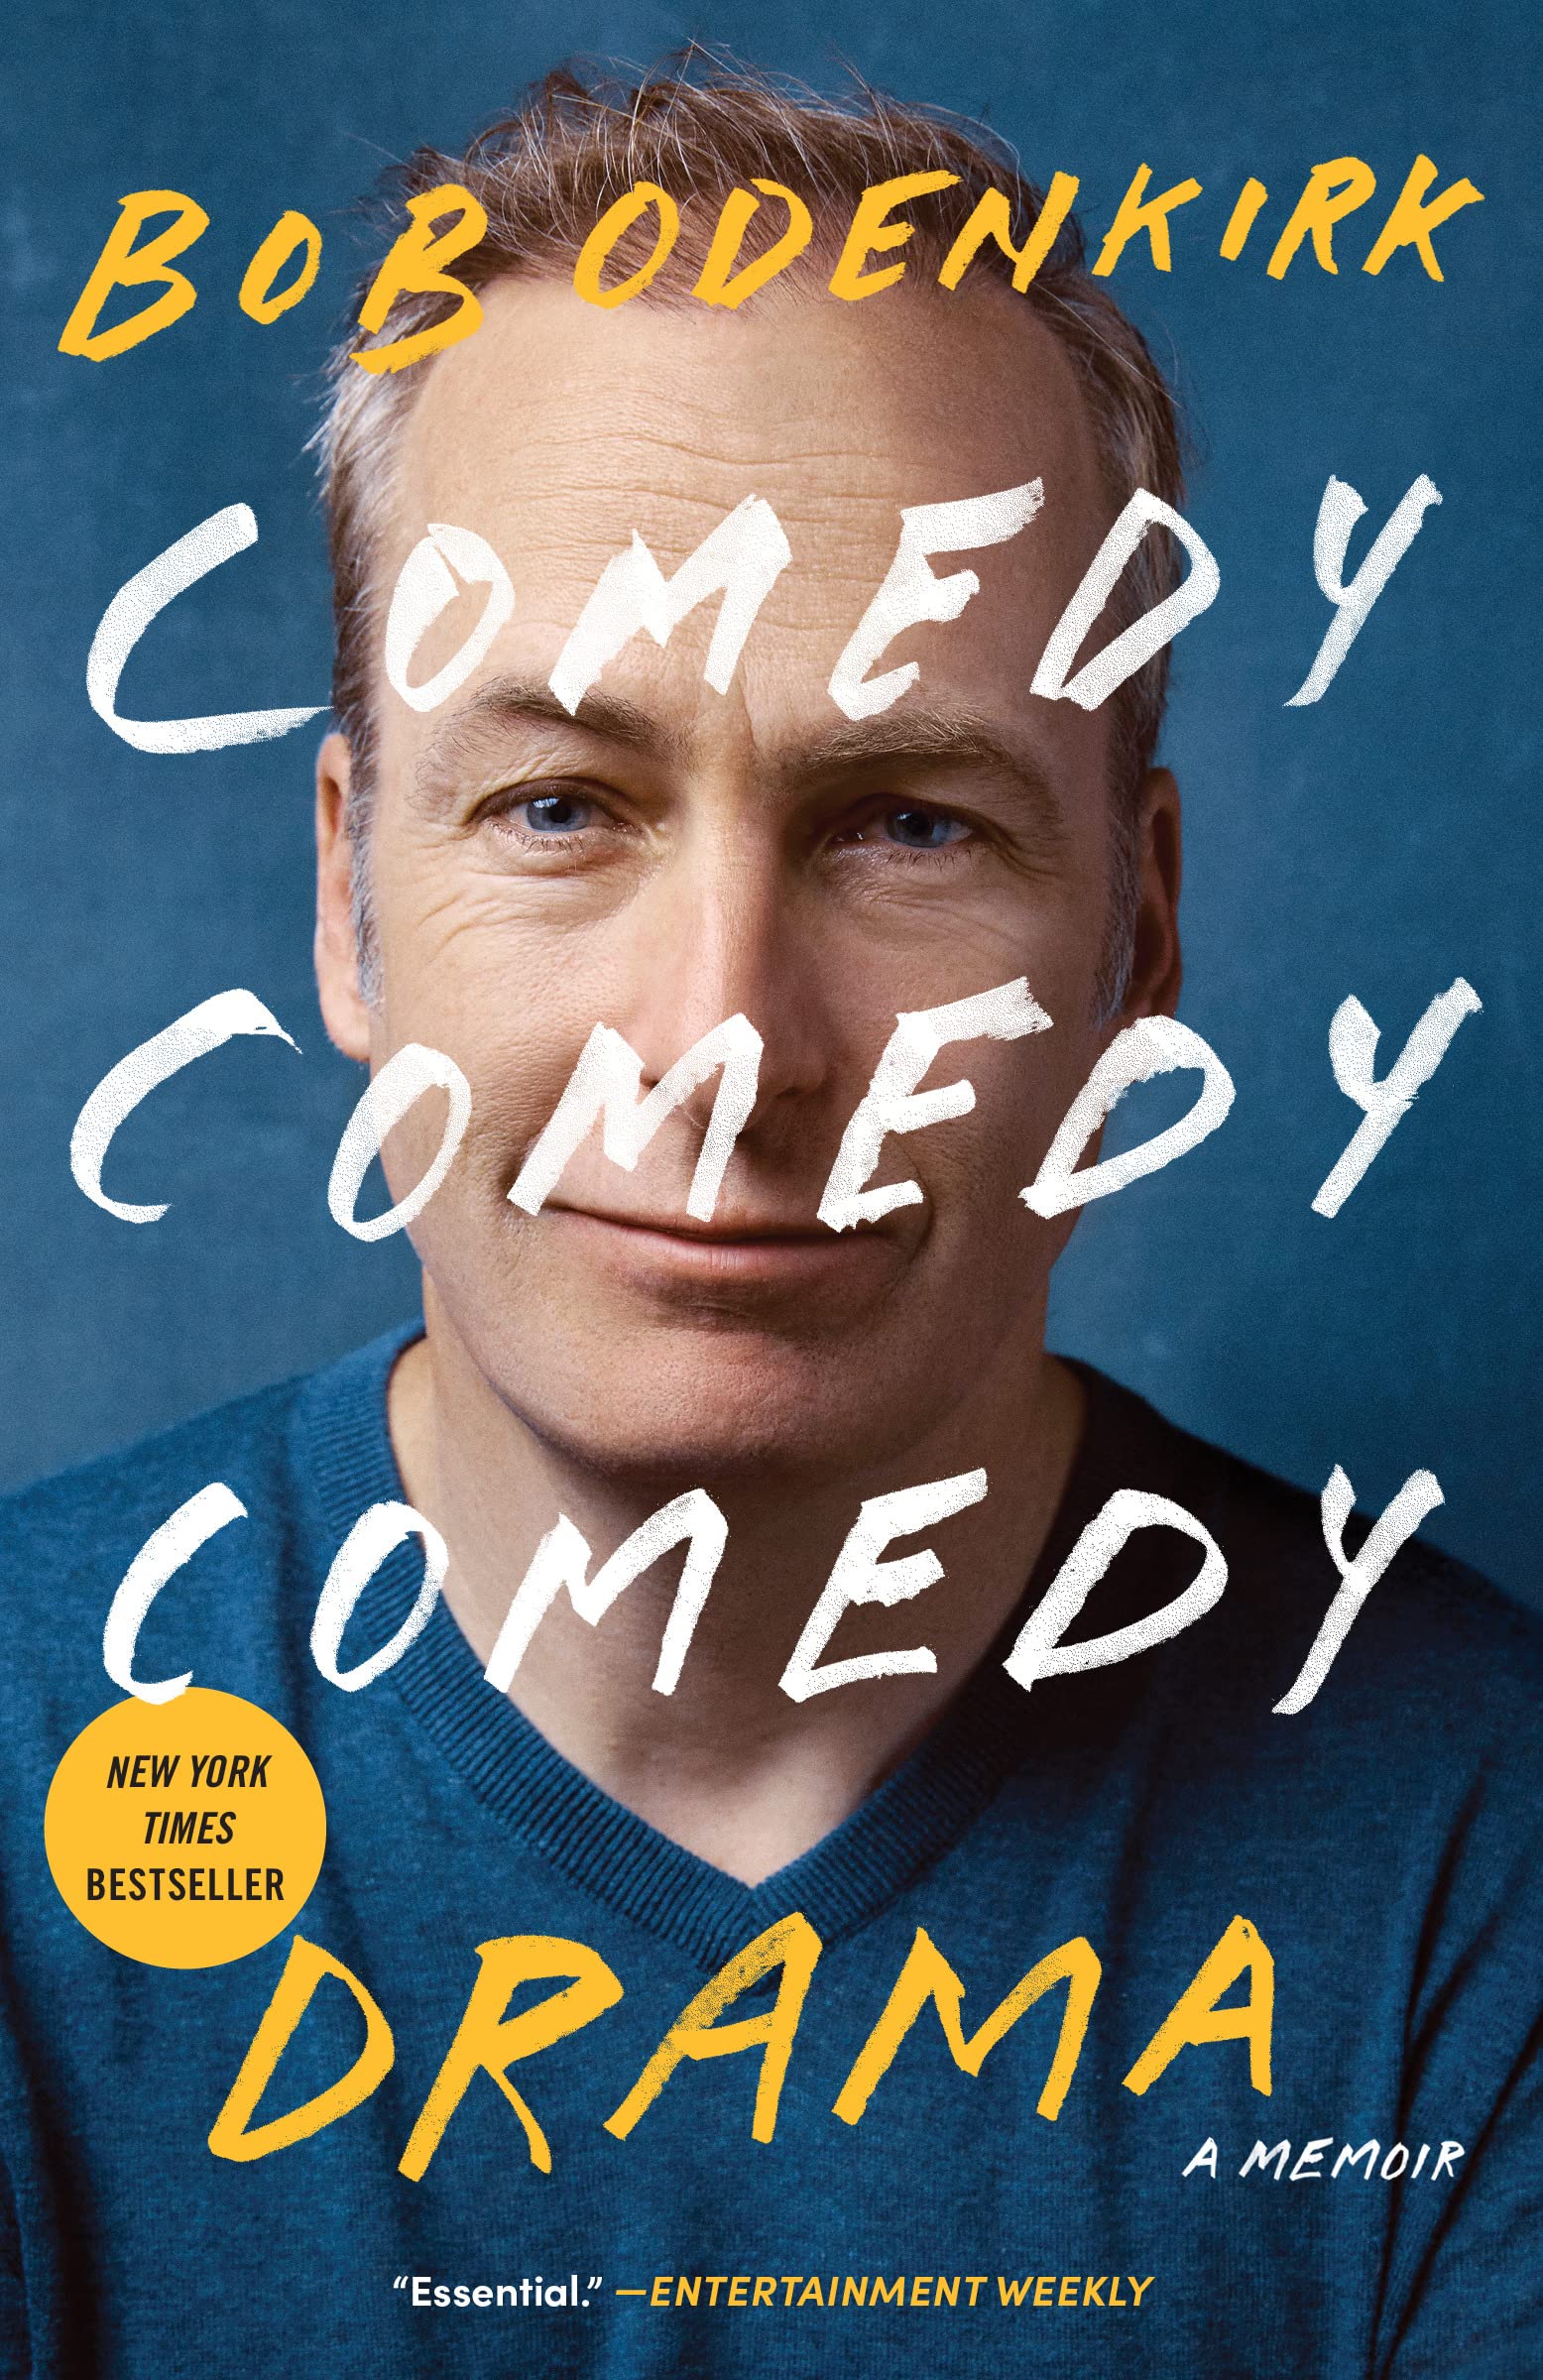 Comedy Comedy Comedy Drama: A Memoir (eBook) by Bob Odenkirk $1.99